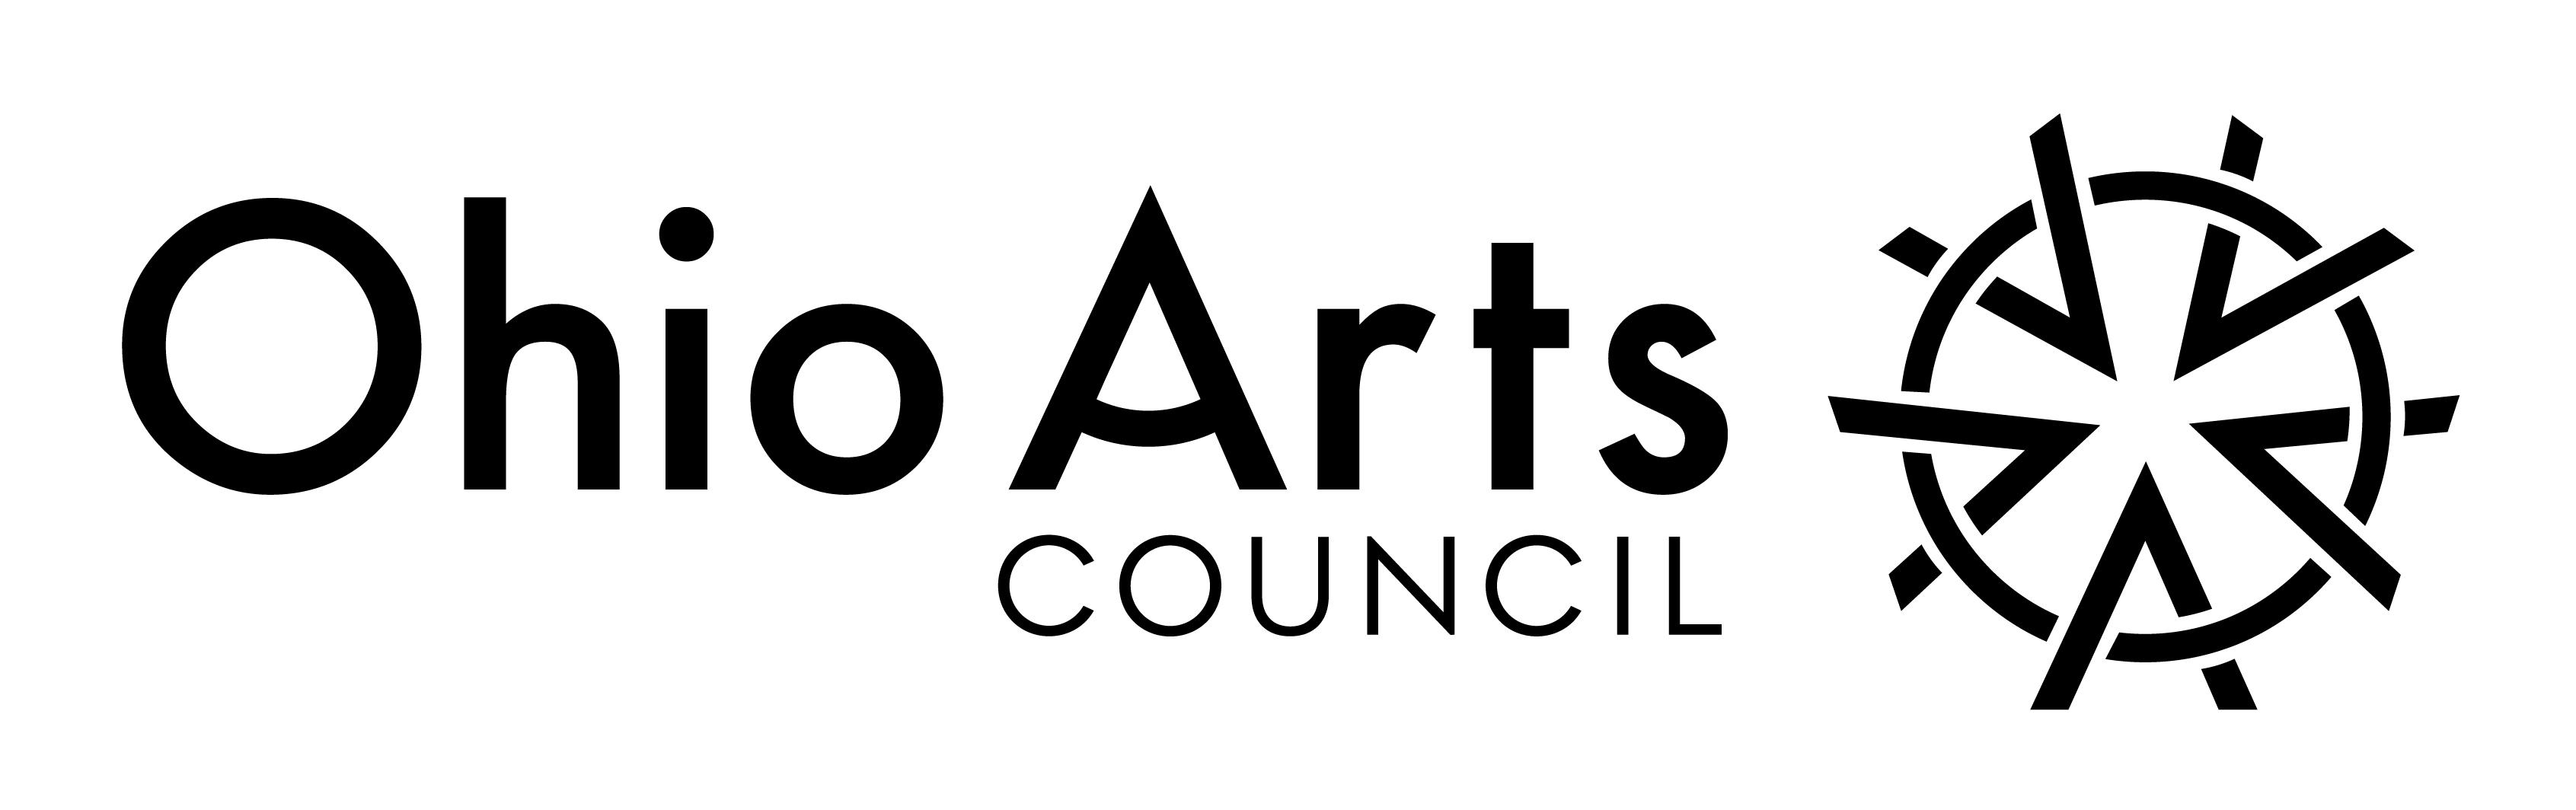 Council Logo - Logos and Branding